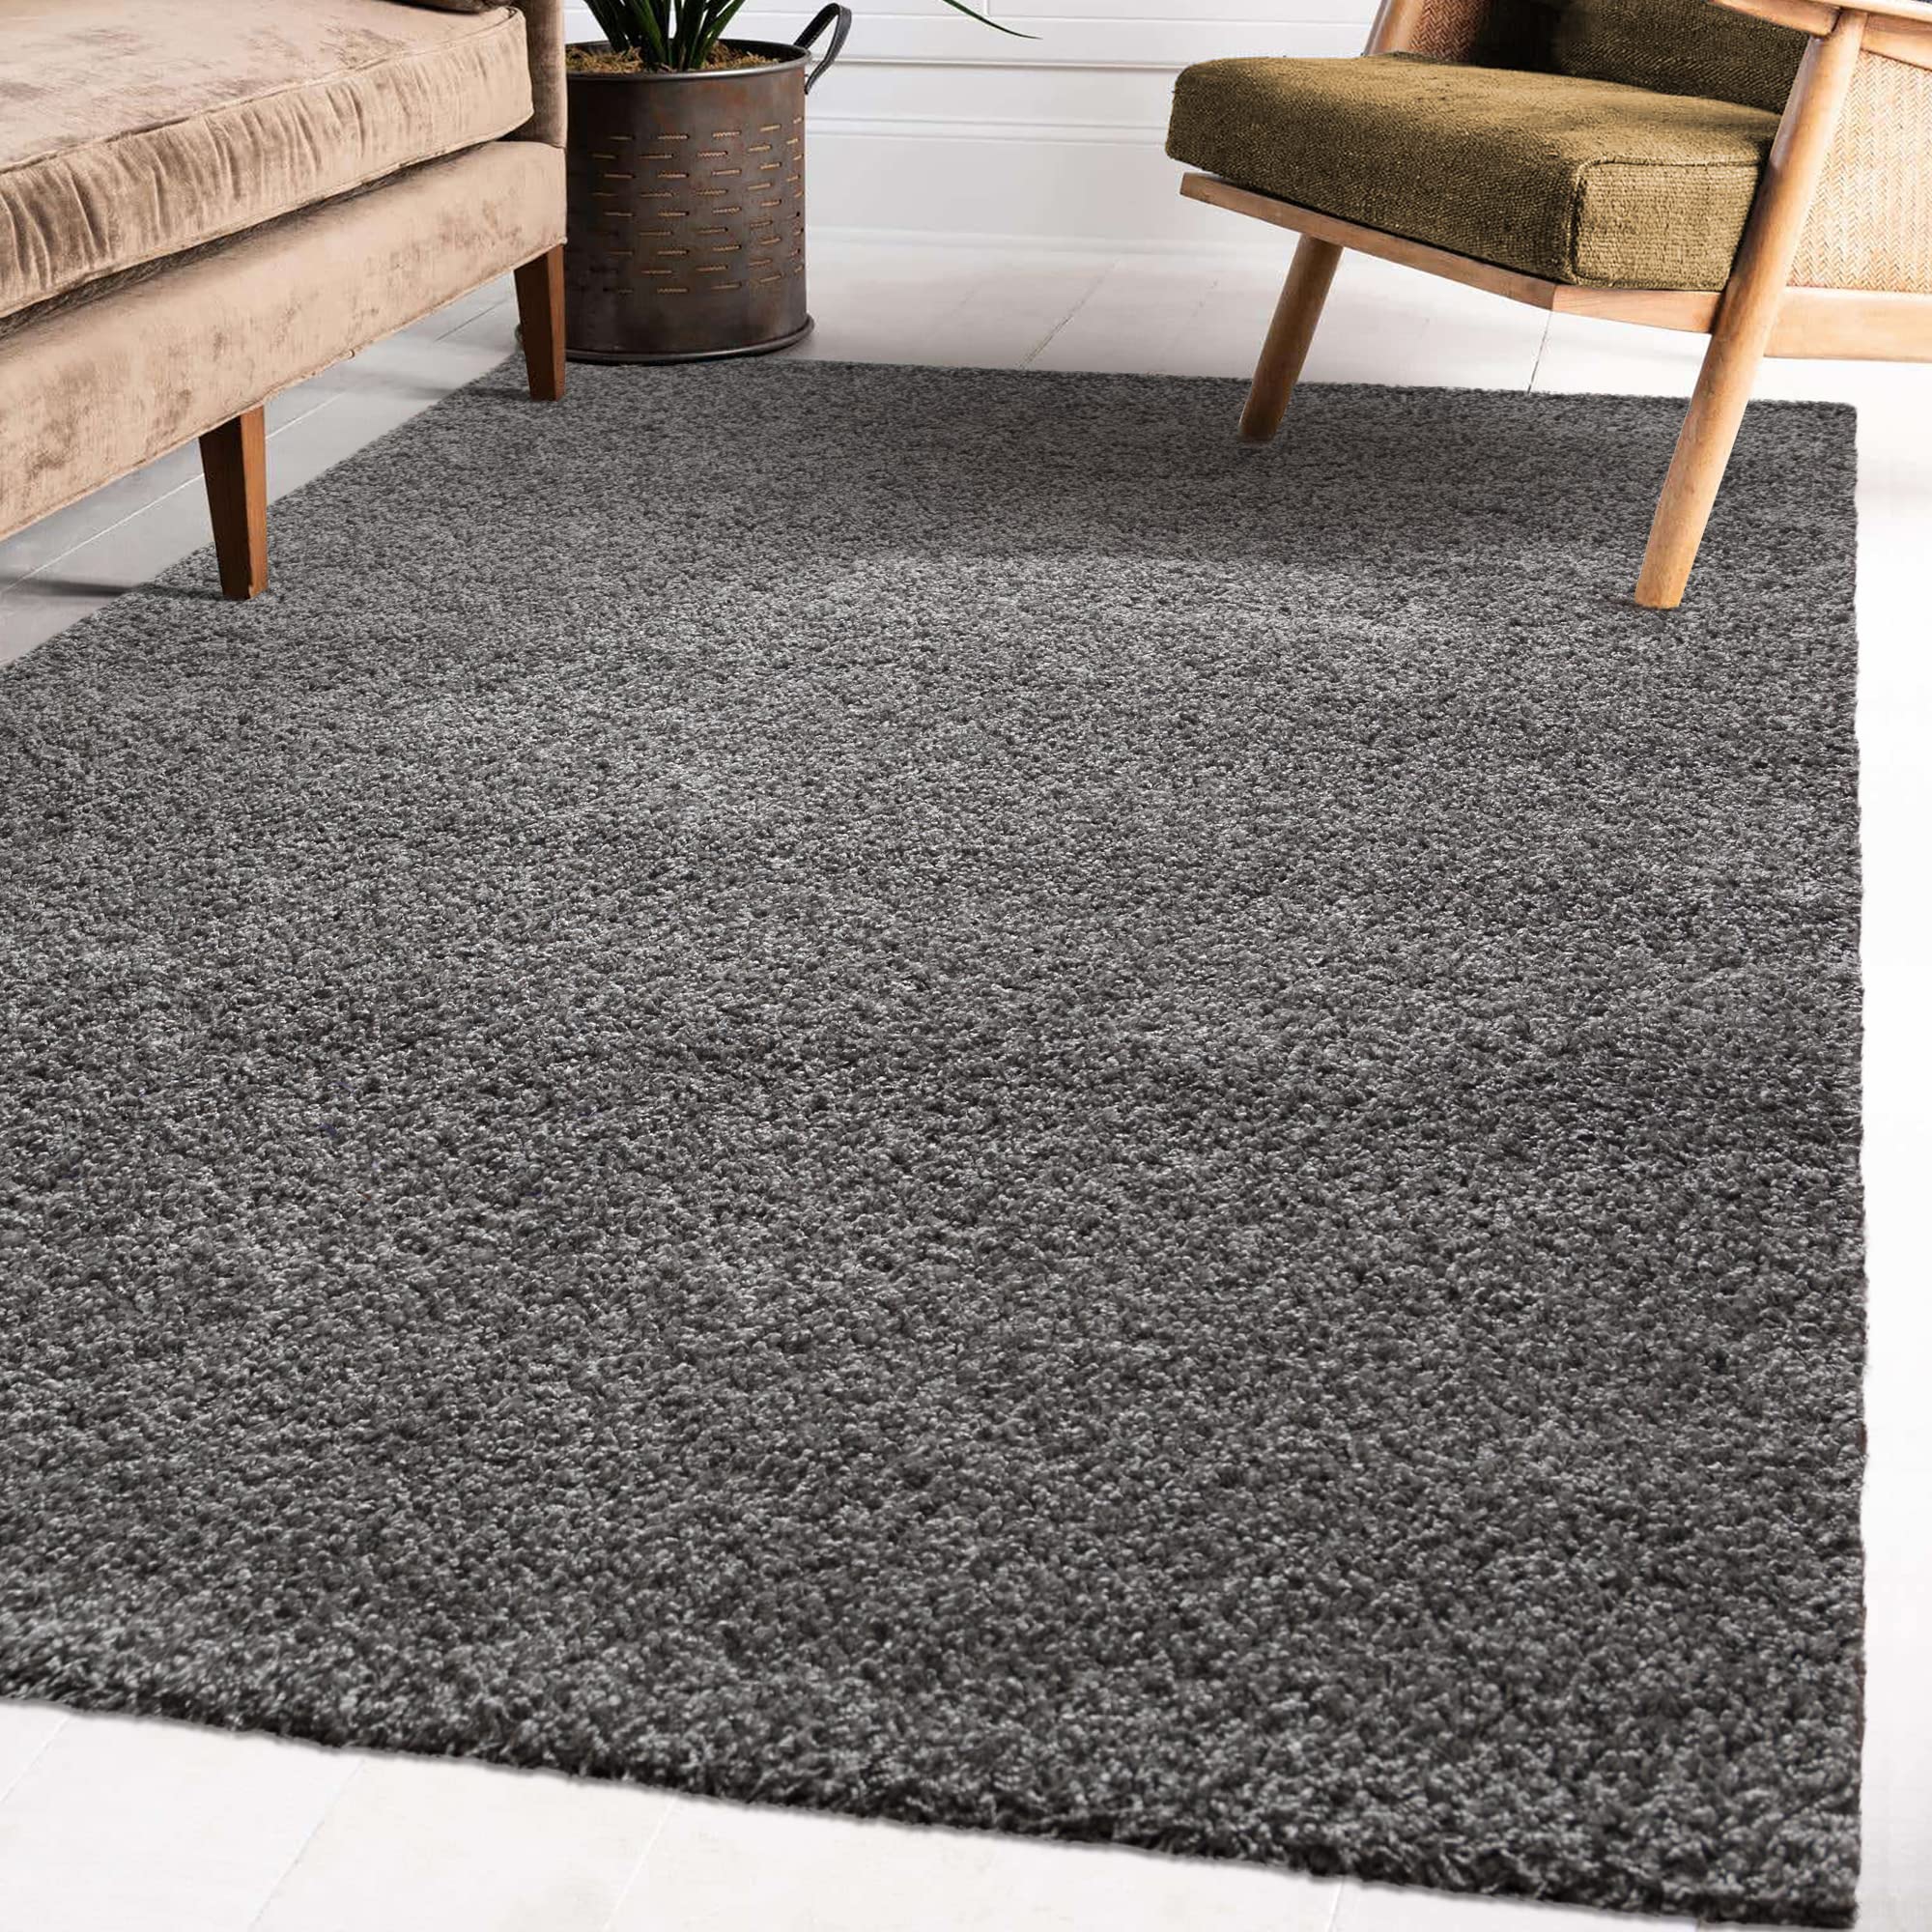 Impression Wohnzimmerteppich - Hochwertiger Öko-Tex zertifizierter Flächenteppich - Solid Color Teppich Grau - Größe 160x230